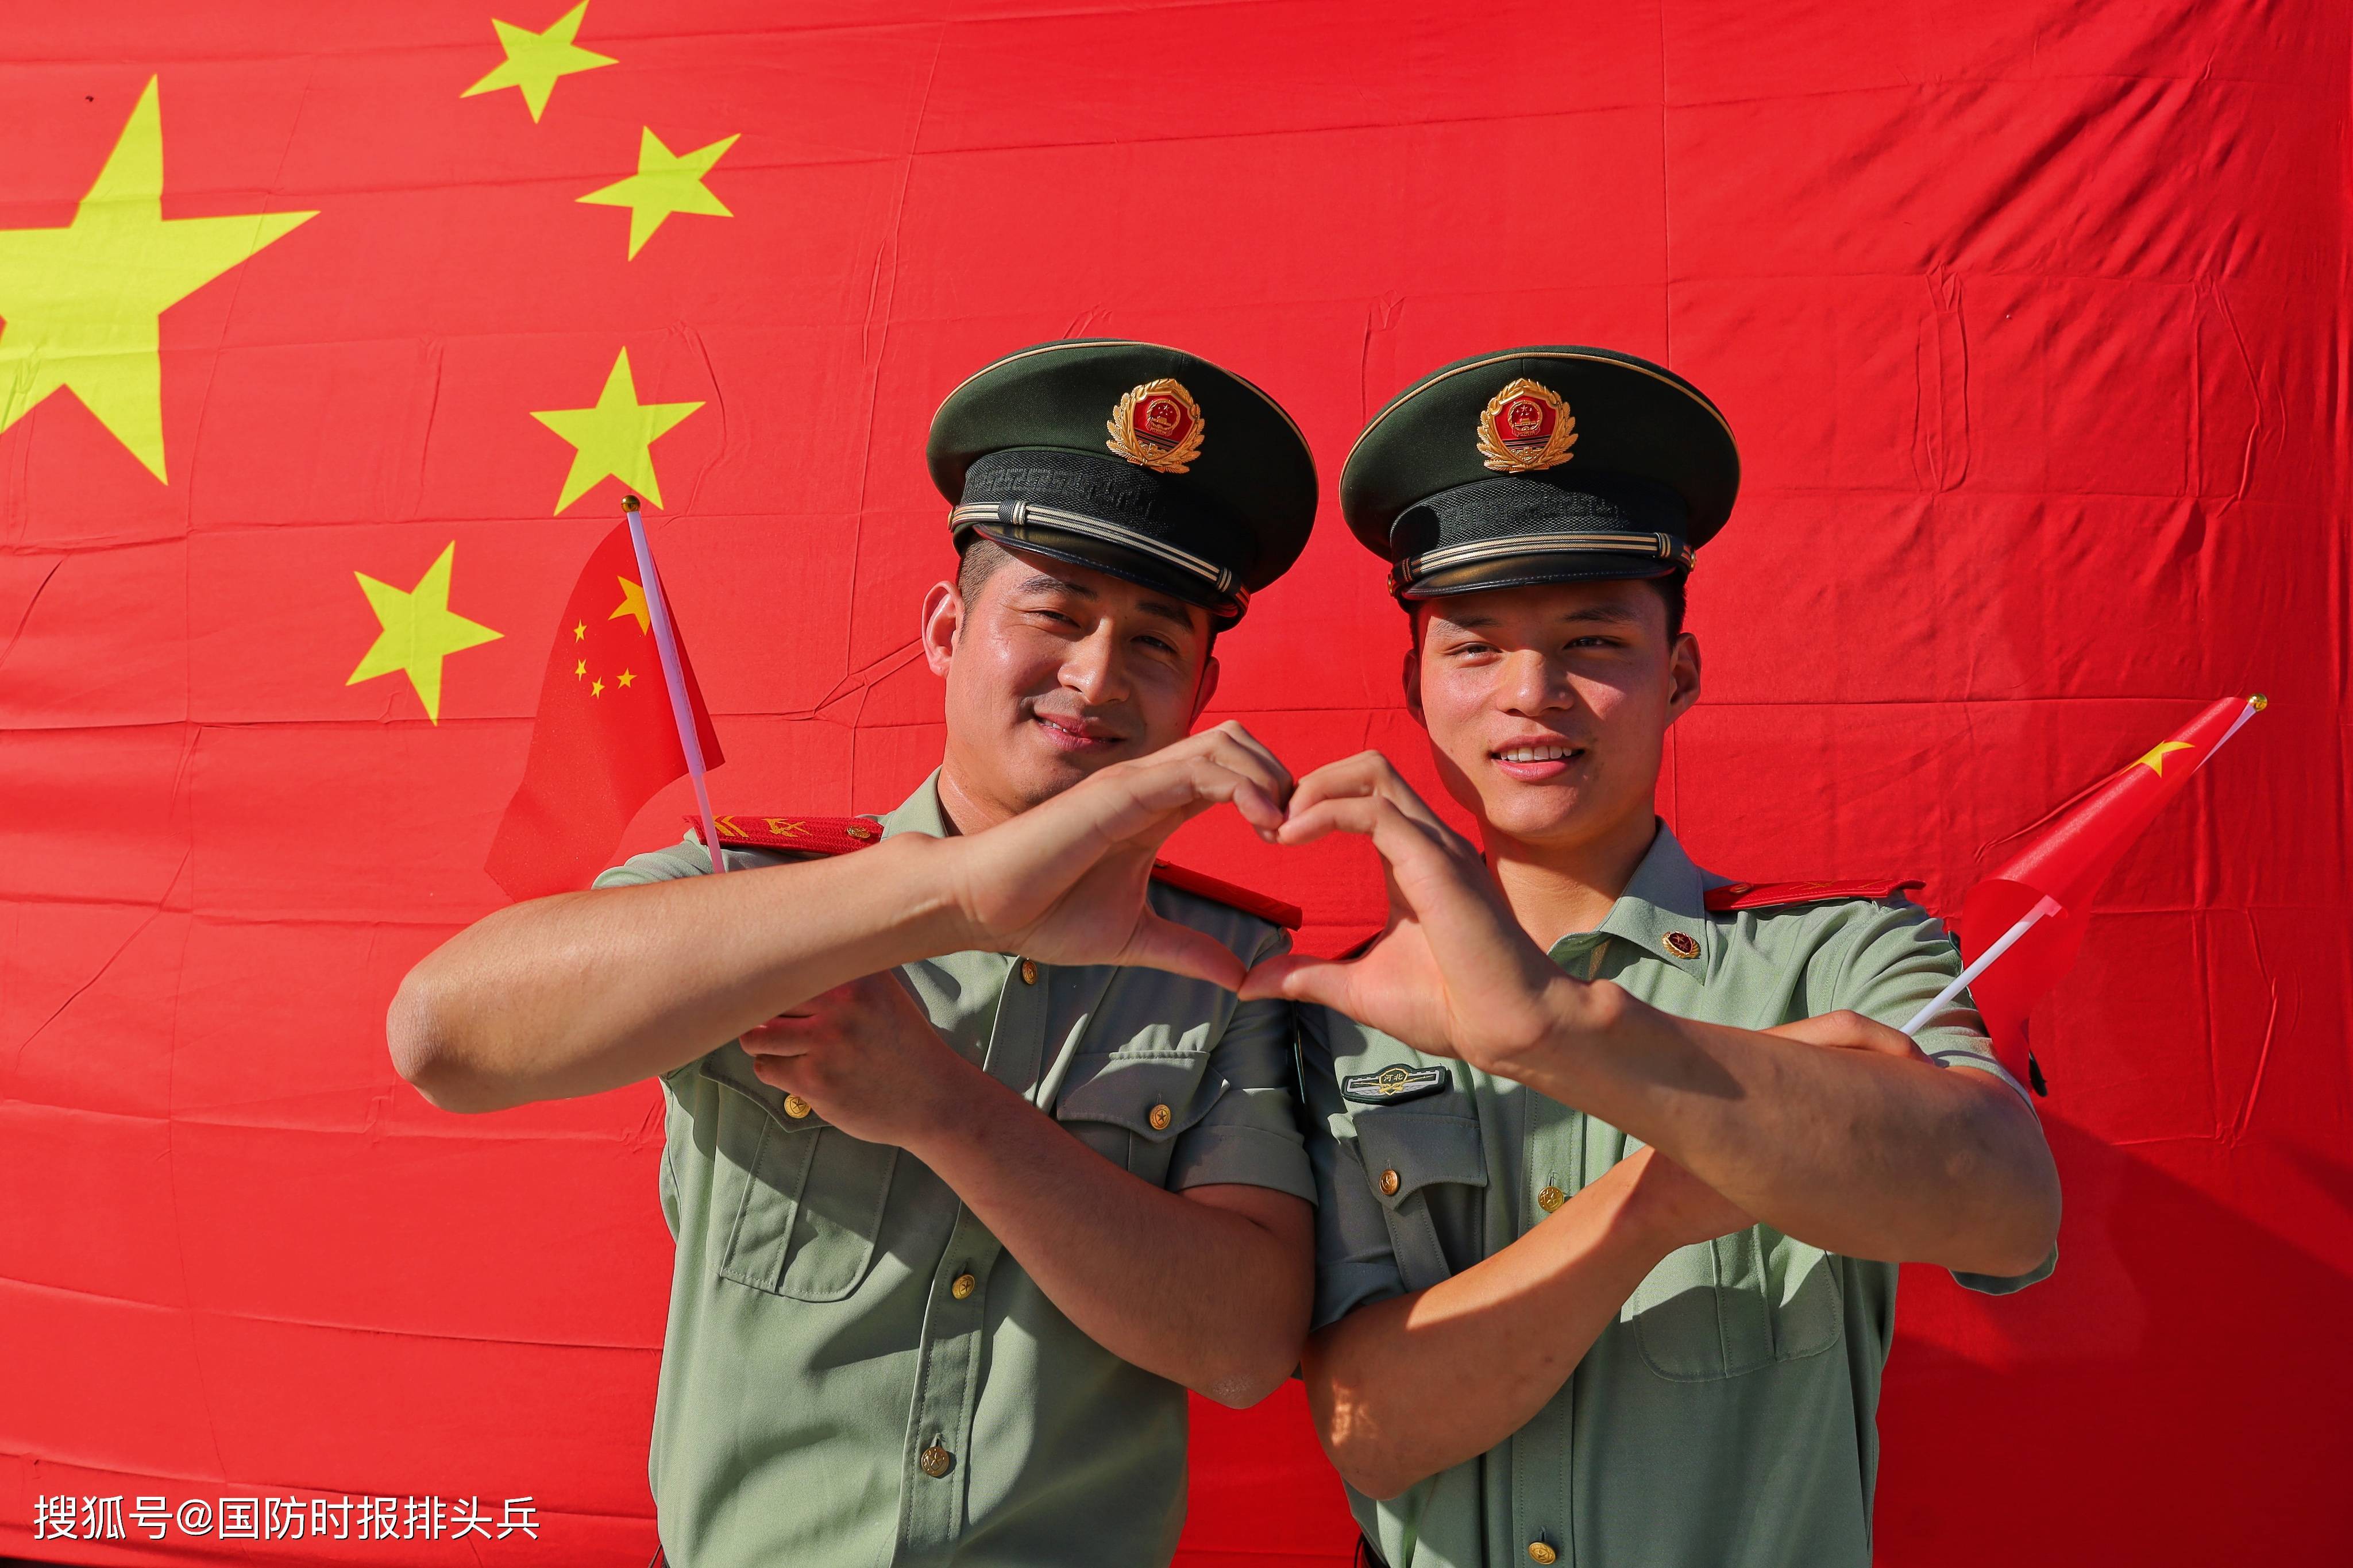 军人与国旗的最美合影!武警河北省总队官兵向祖国告白:我爱你,中国!